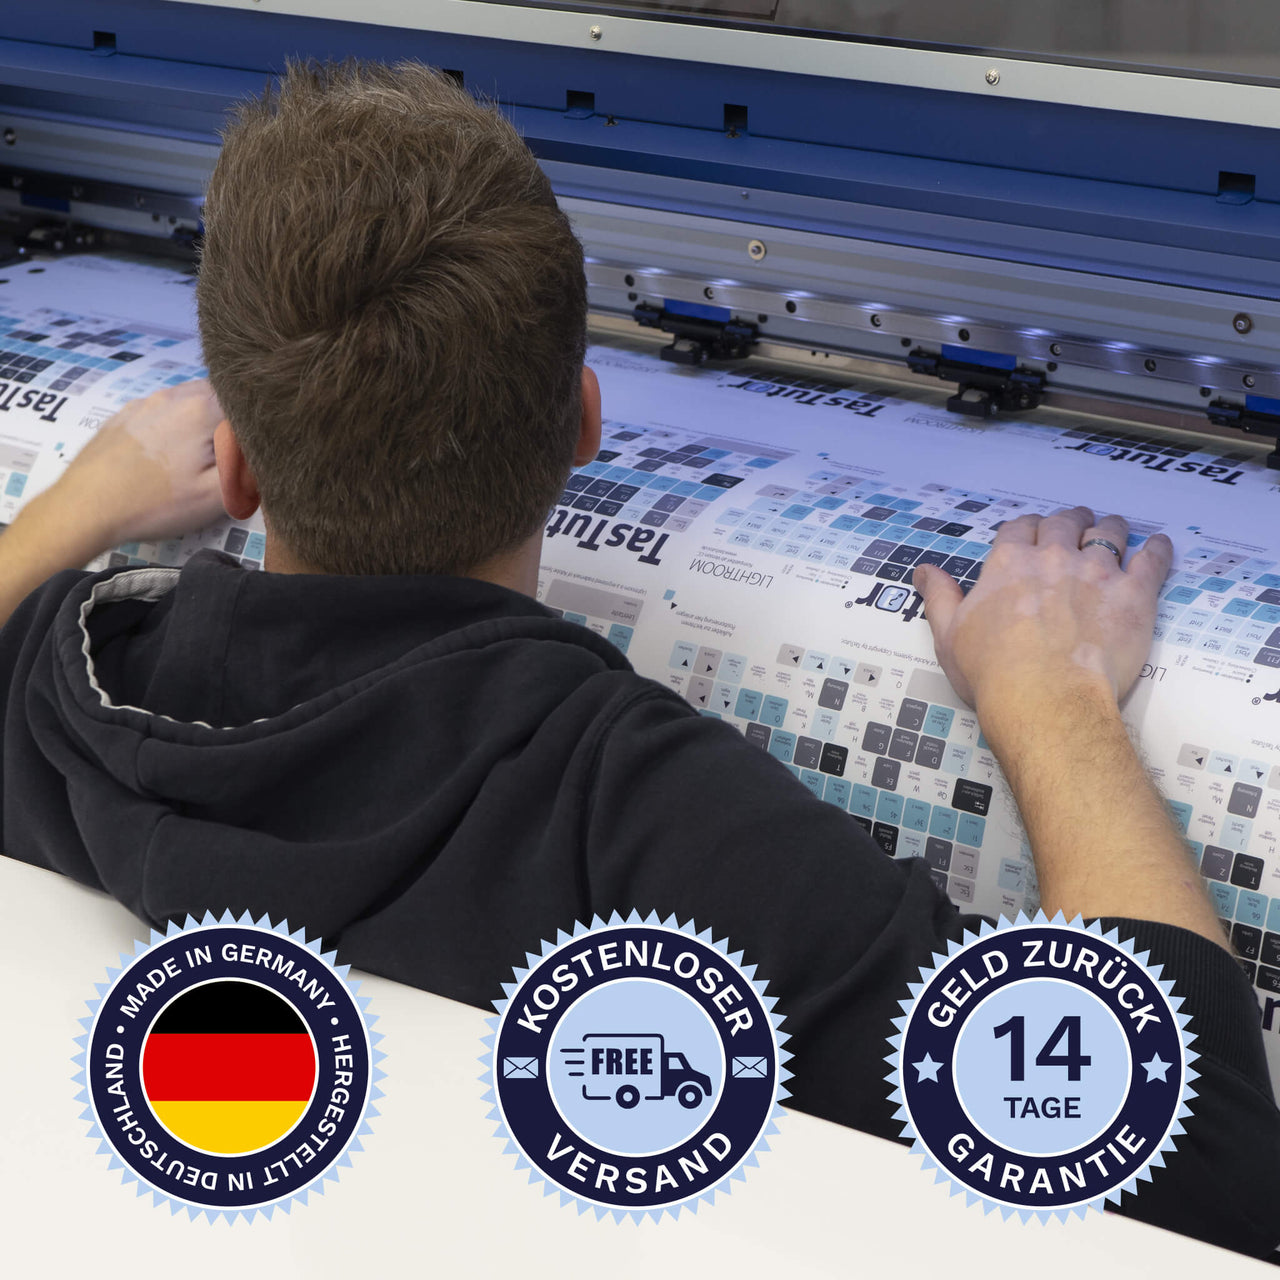 Buchstaben / Zahlen lernen Tastaturaufkleber werden in Deutschland hergestellt. Der Versand ist kostenlos und wir gewährleisten 14 Tage Geld zurück Garantie | TasTutor